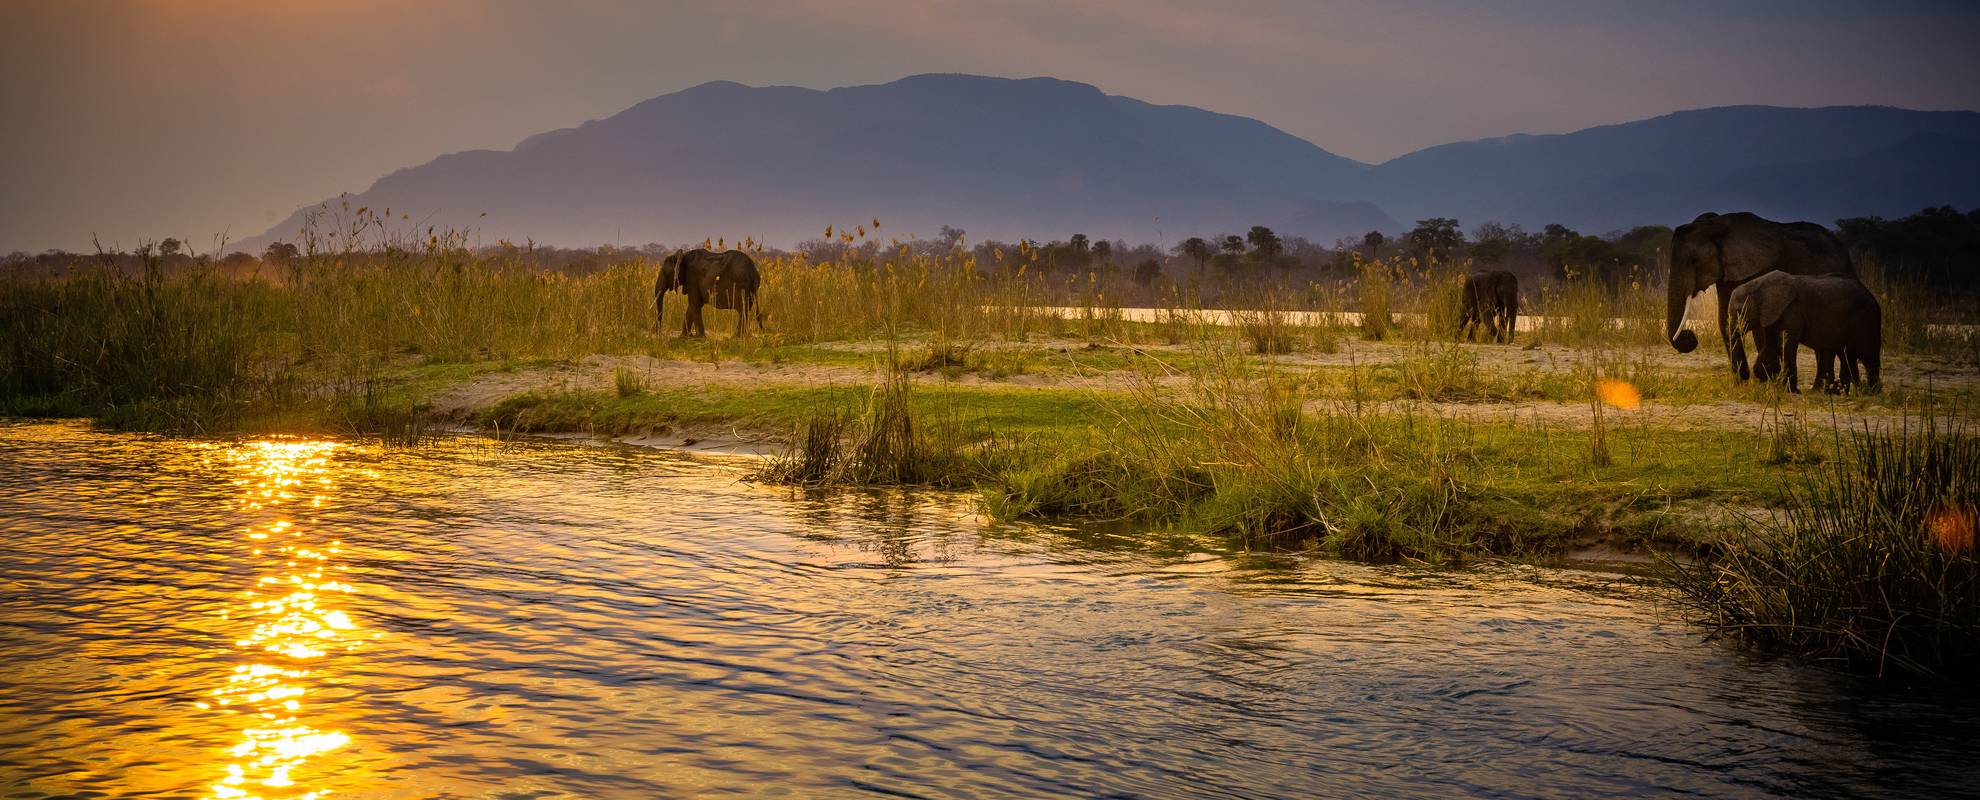 I Lower Zambezi nationalpark kan du resa med kanot på floden